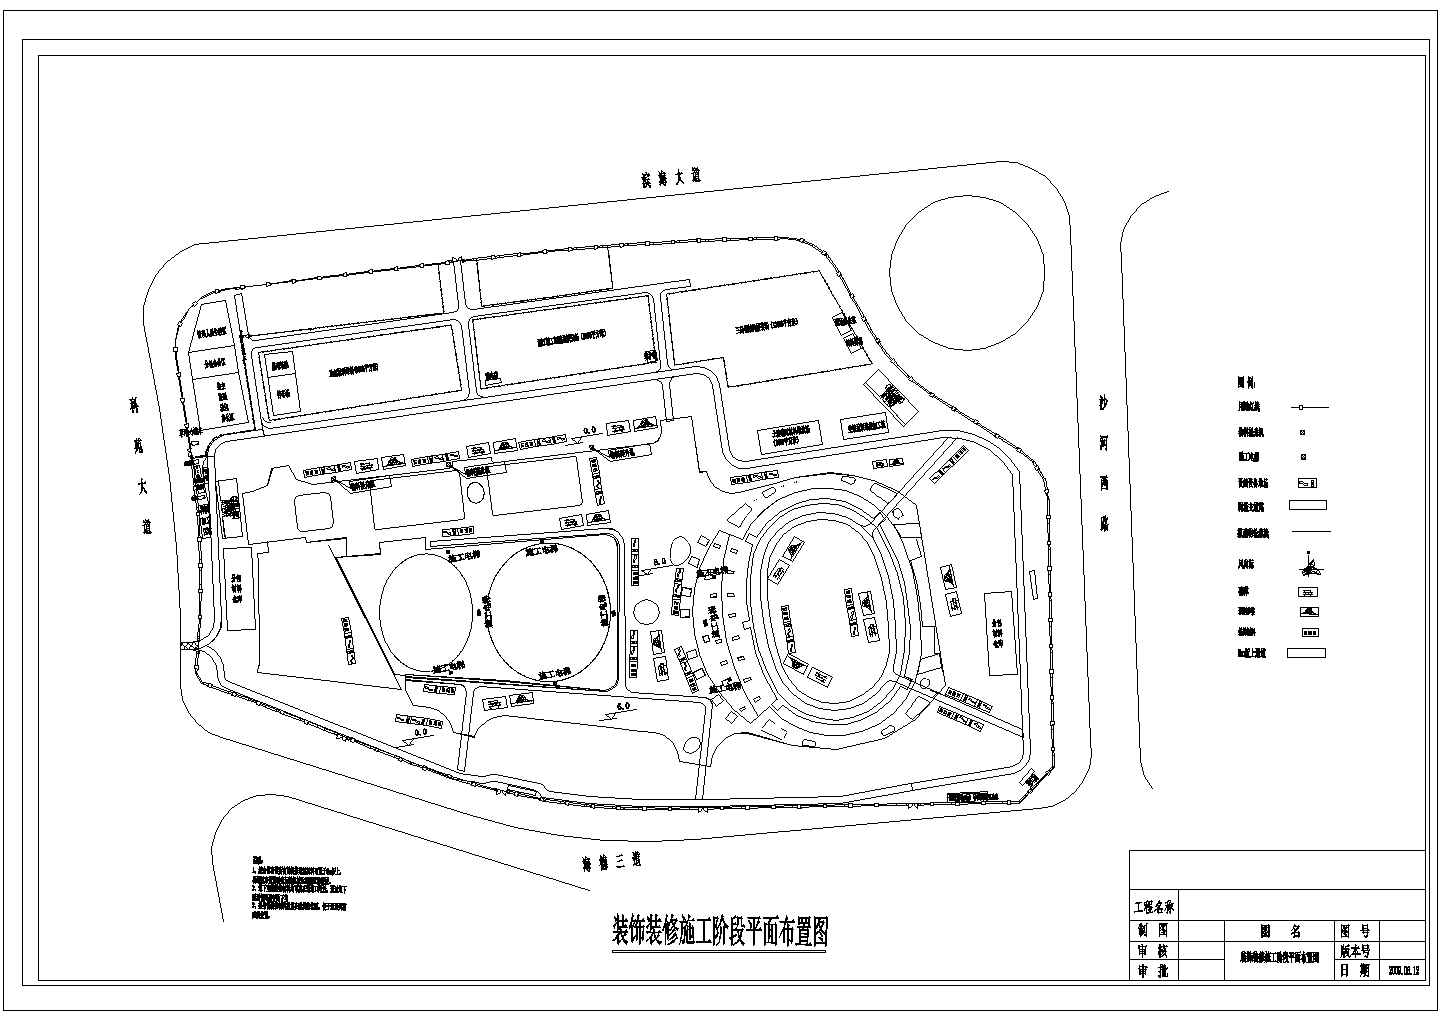 某体育馆施工现场CAD完整设计-平面布置图